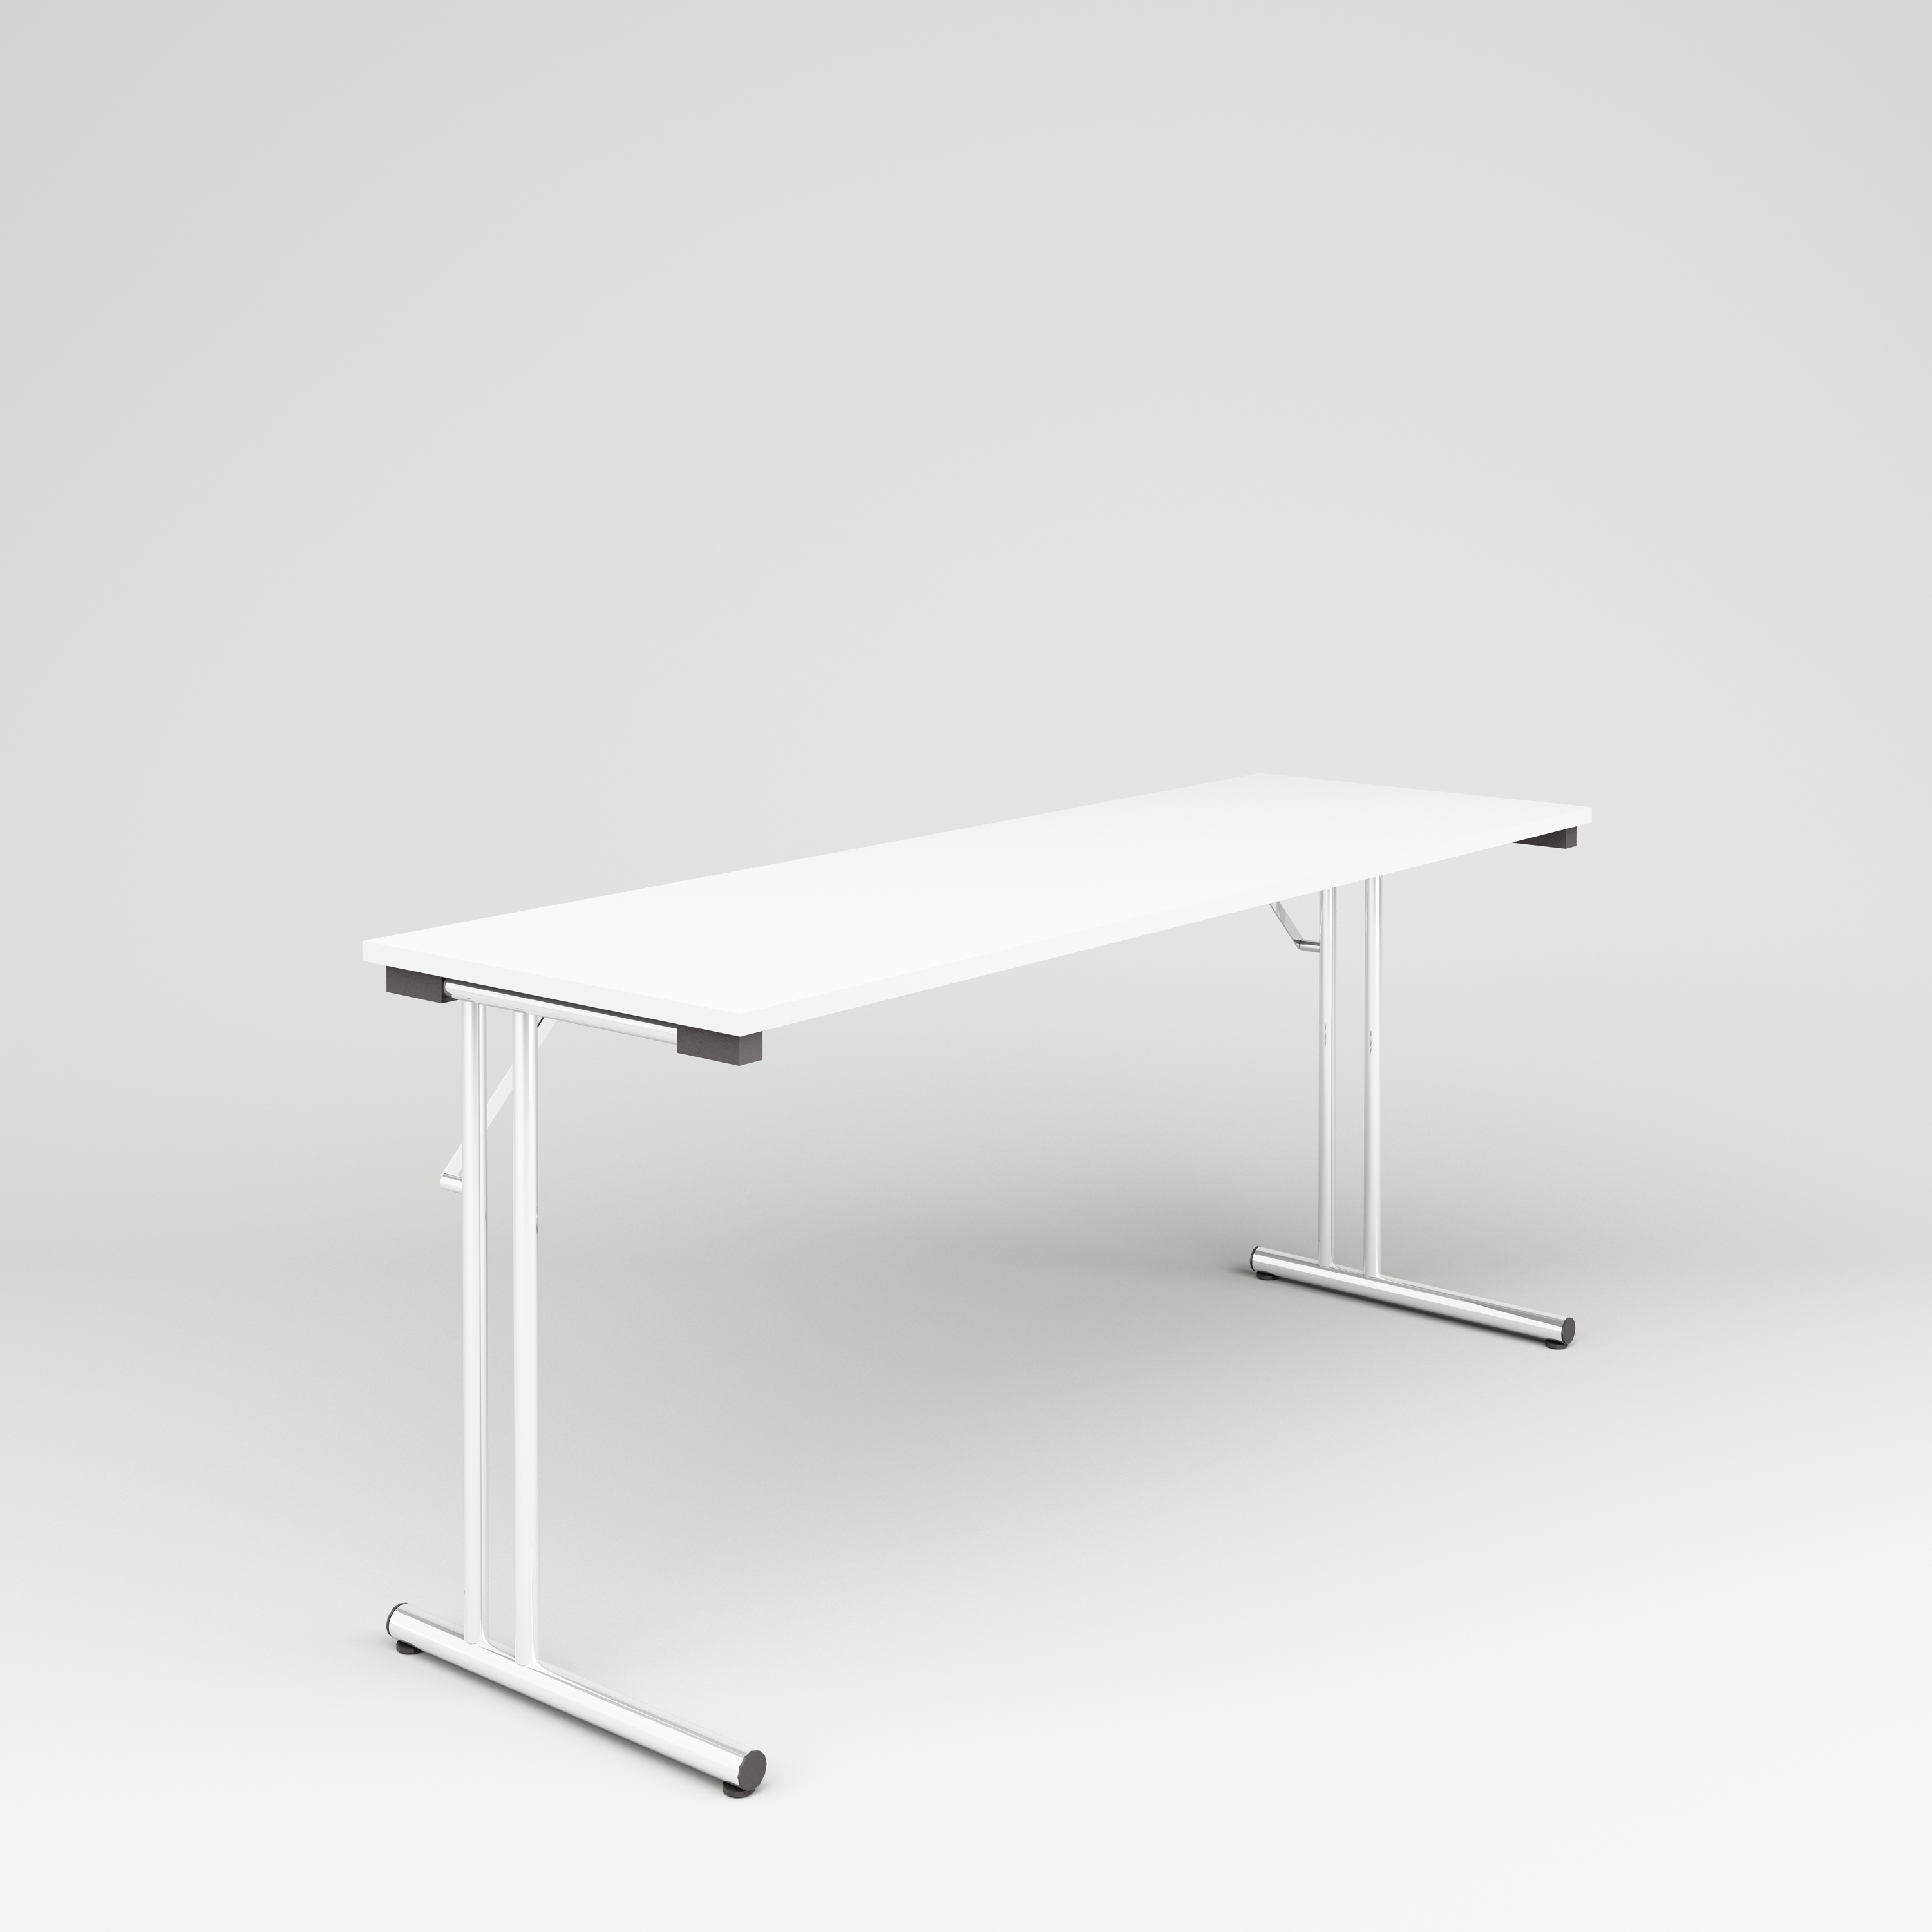 Folding table Allround, 1600x520, white laminate, chrome